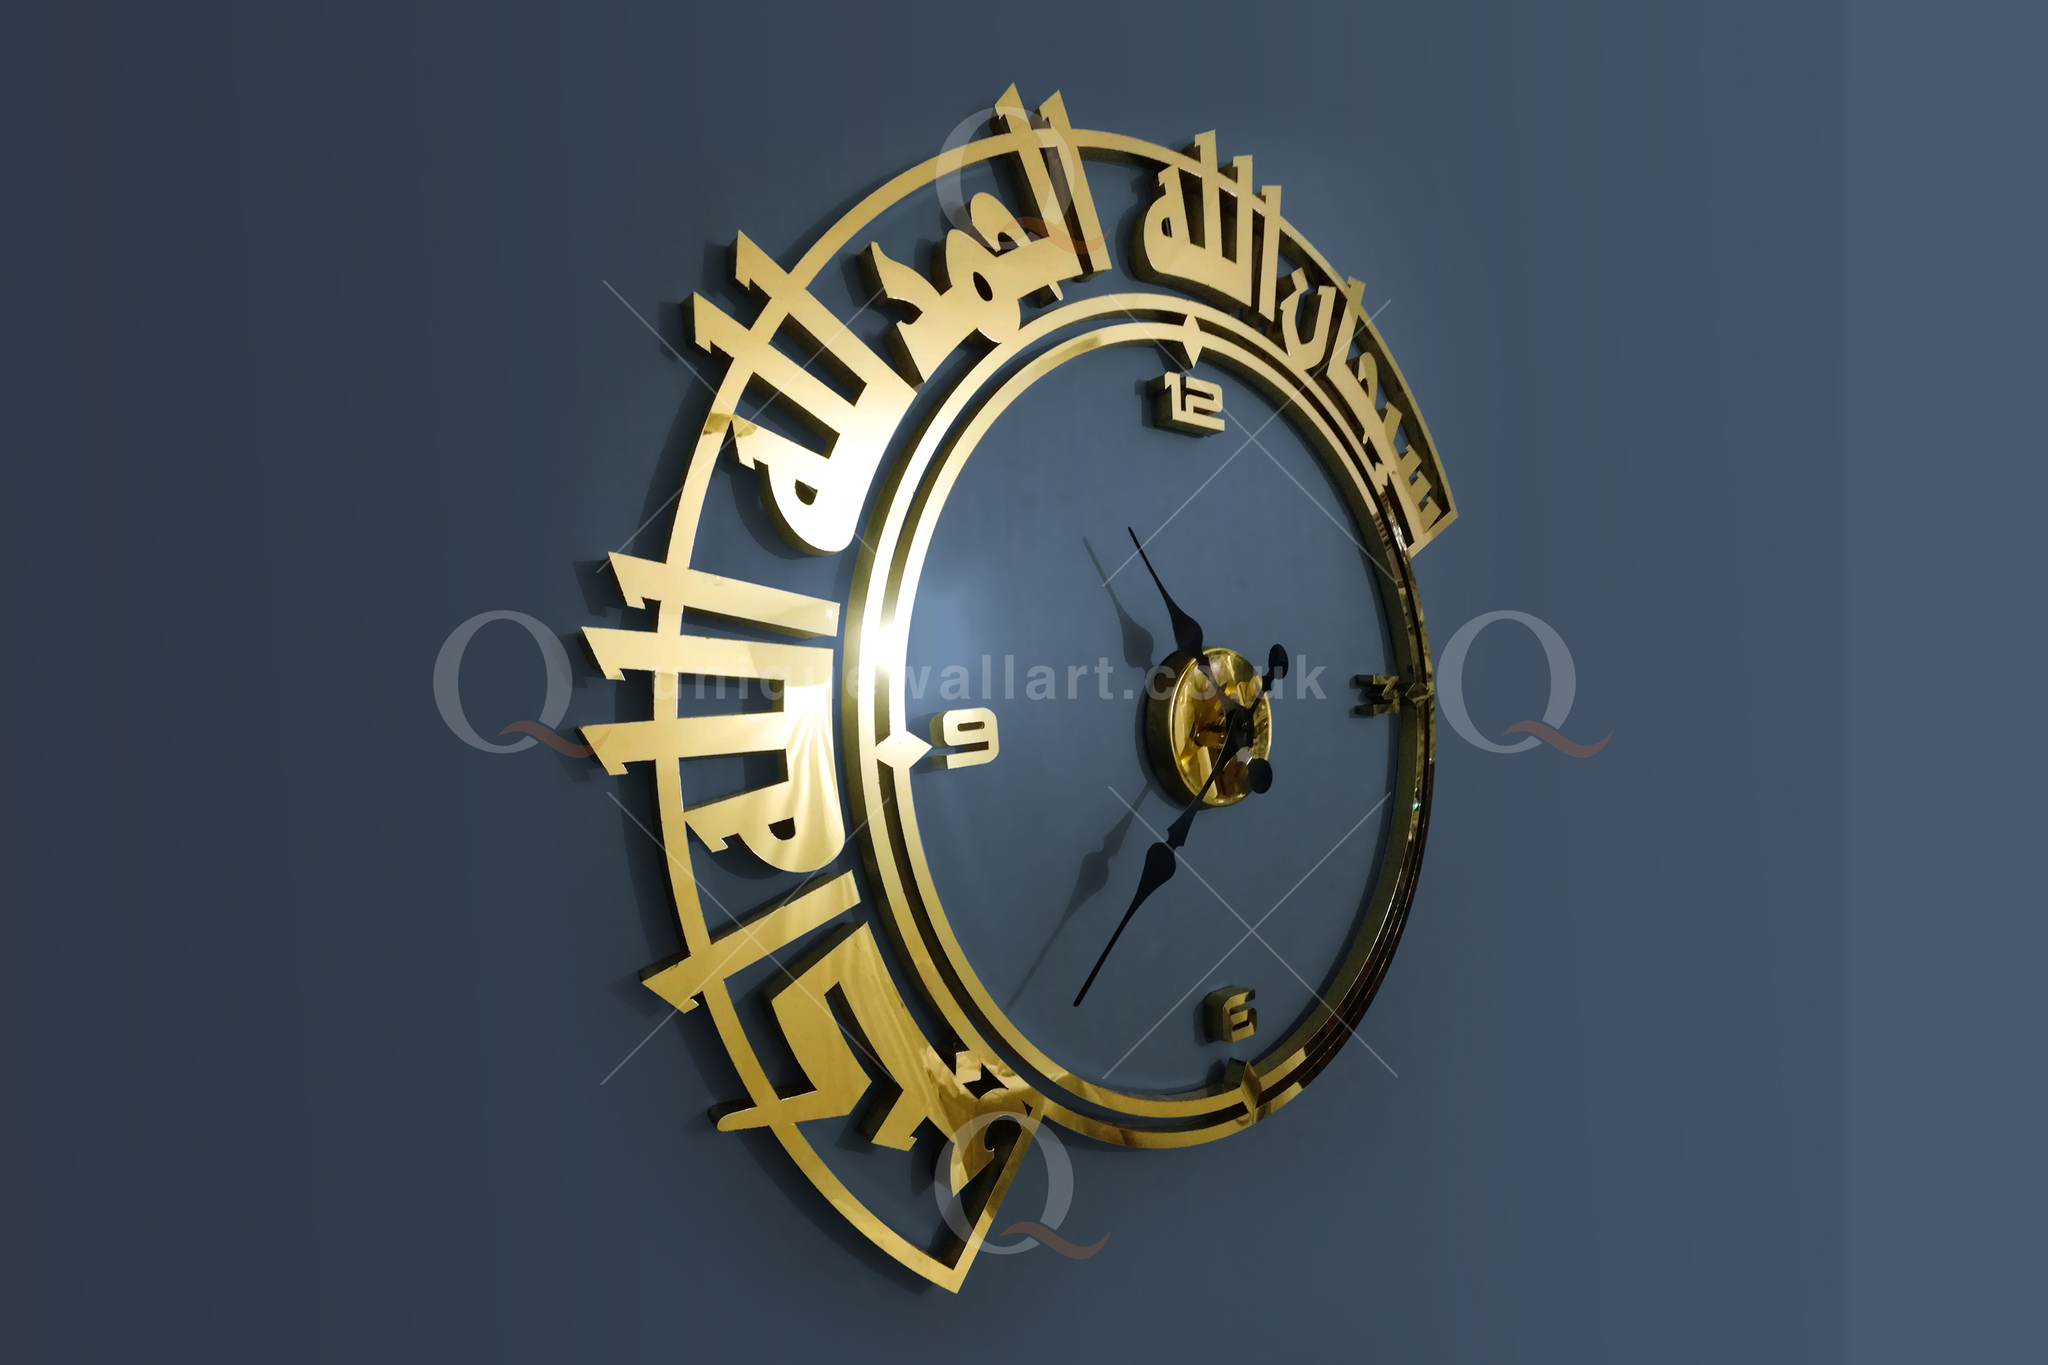 Tasbeeh wall Clock SubhanAllah Alhamdulillah Allah Ho Akbar